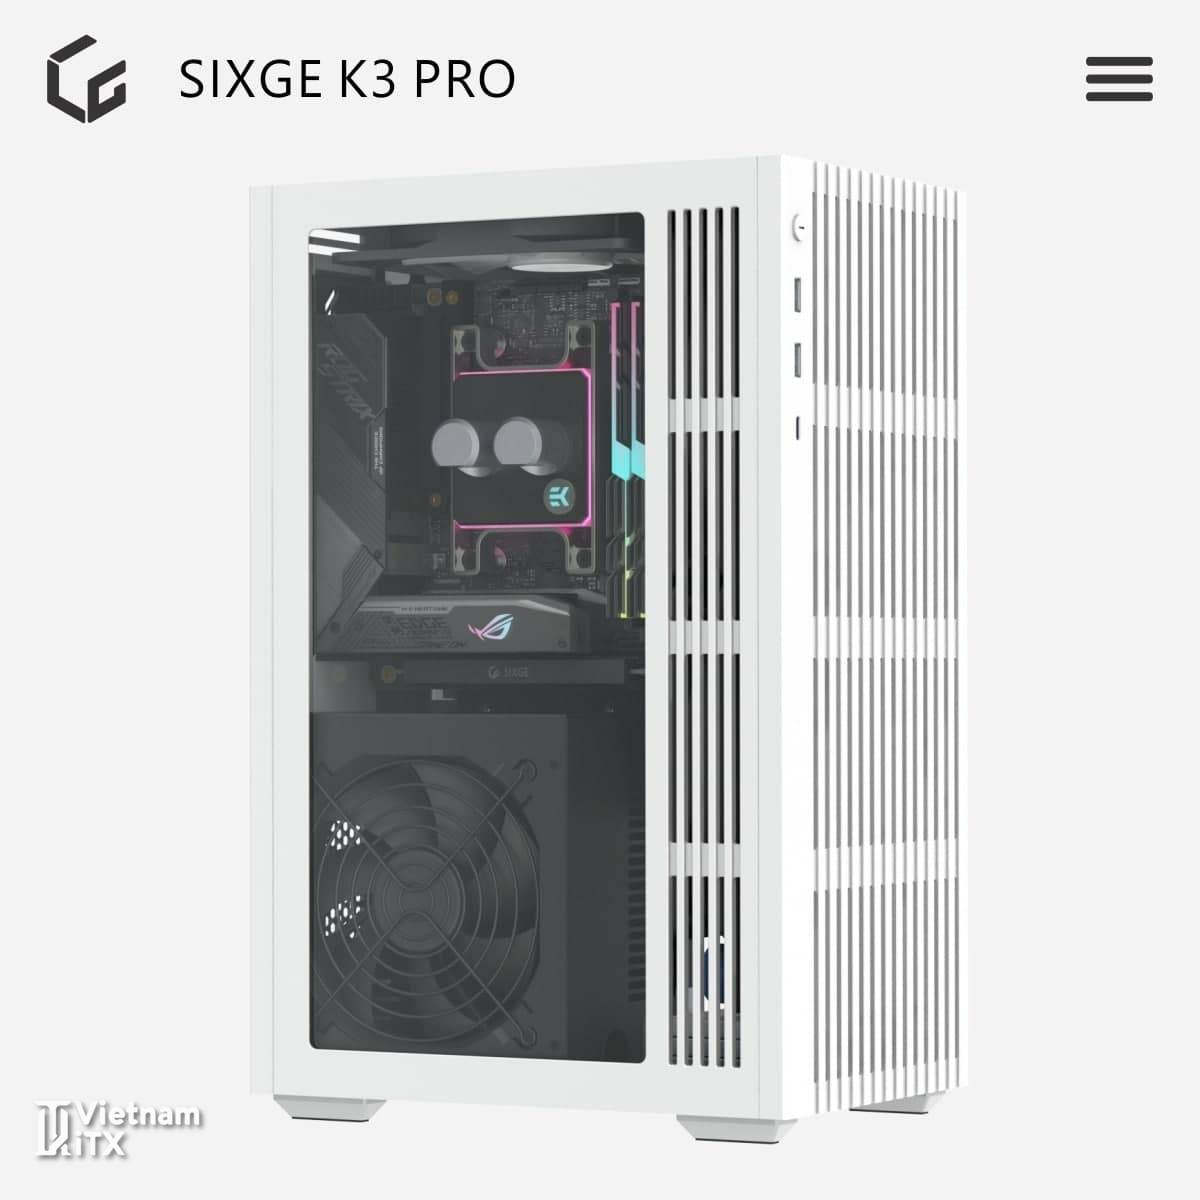 SIXGE K3 Pro itx xây dựng dàn máy mini pc hoàn hảo nhất 2022